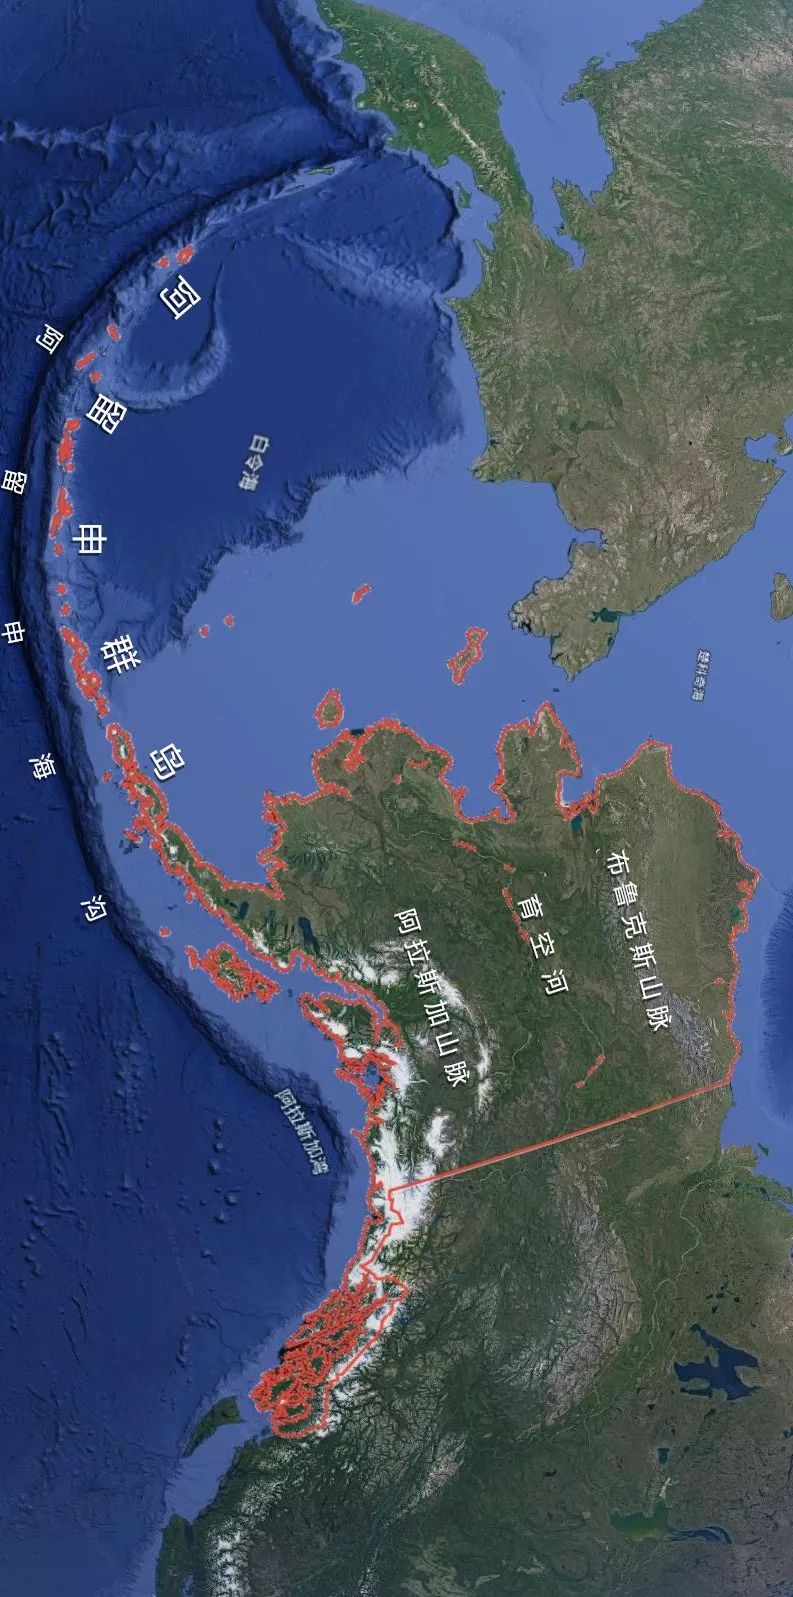 720万买回的阿拉斯加,有怎样的地理和历史?